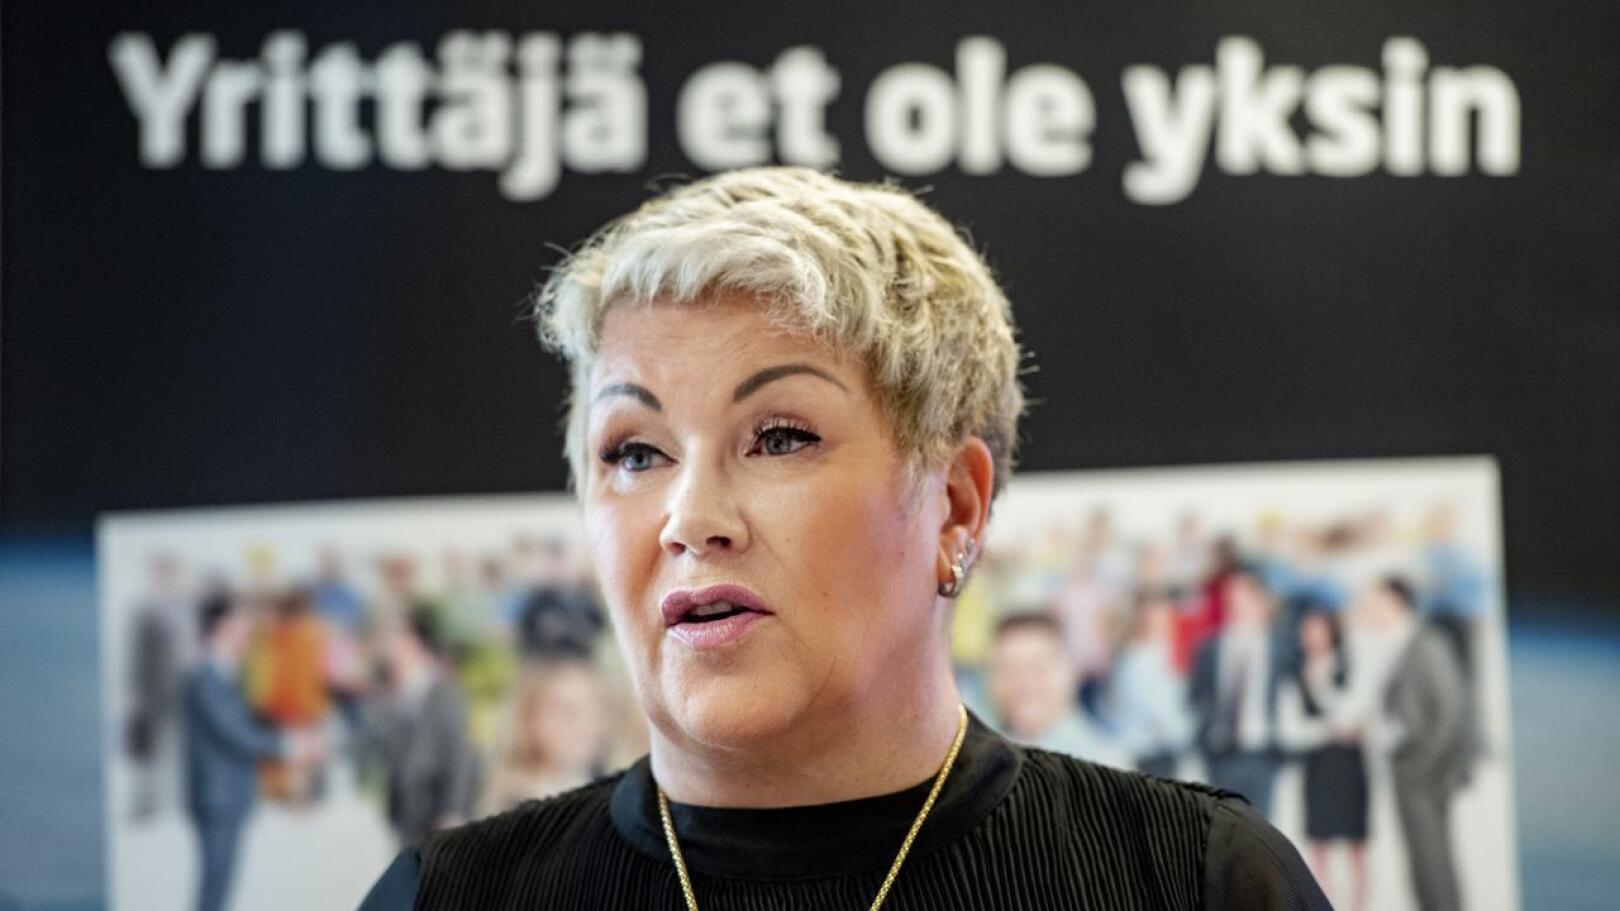 Keski-Pohjanmaan Yrittäjien toimitusjohtaja Mervi Järkkälä ei näe ongelmia KPO:n ja yrittäjien välisissä suhteissa.